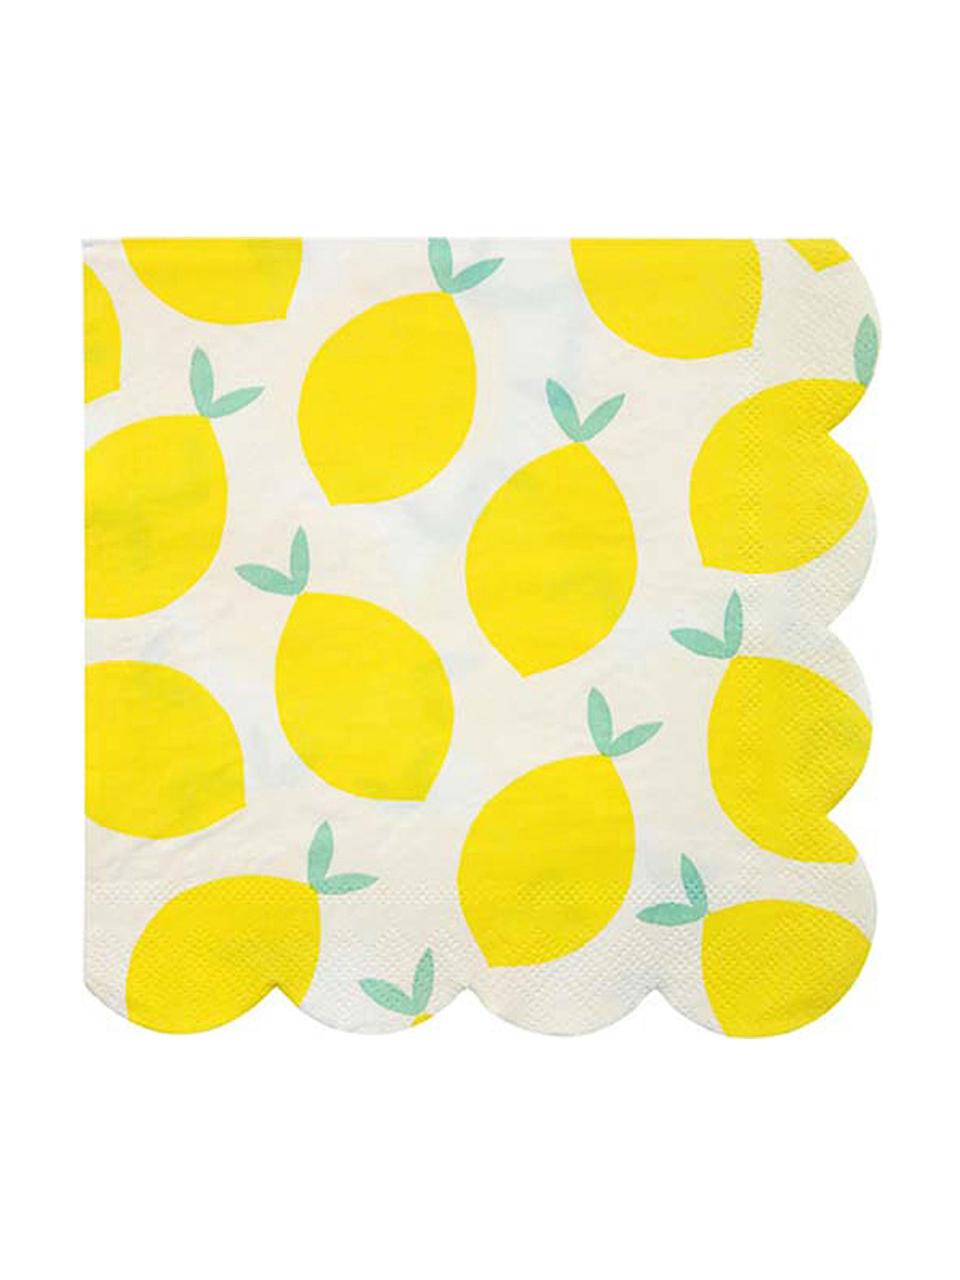 Serwetka z papieru Lemon, 20 szt., Papier, Biały, żółty, zielony, S 33 x D 33 cm